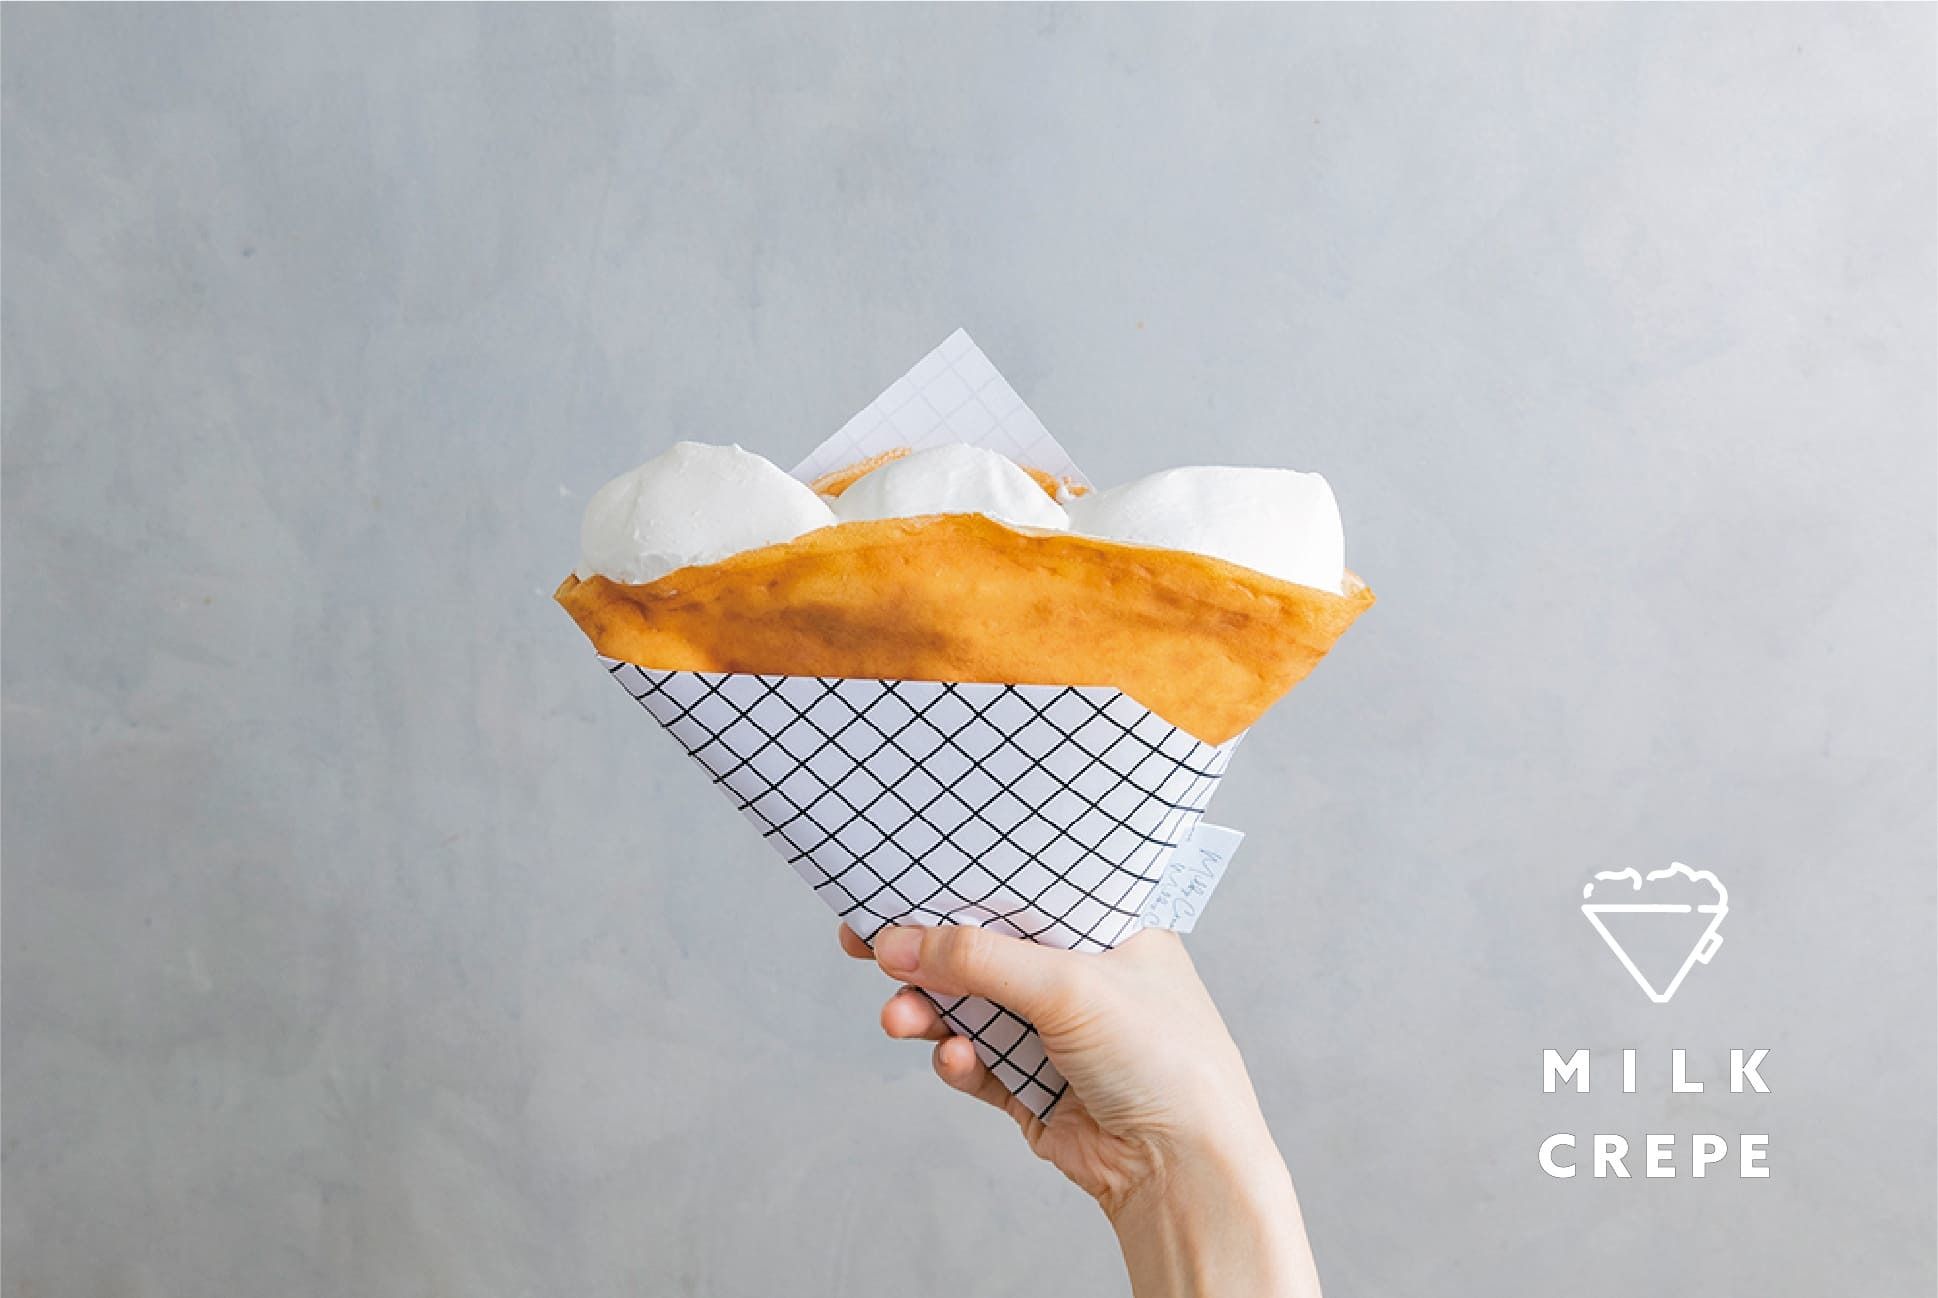 「ふわふわミルククリームの新感覚クレープ」！北海道根釧地区の生乳のみを限定使用。ミルキーなクリームとパリパリ生地の「新食感クレープ」#Z世代Pick